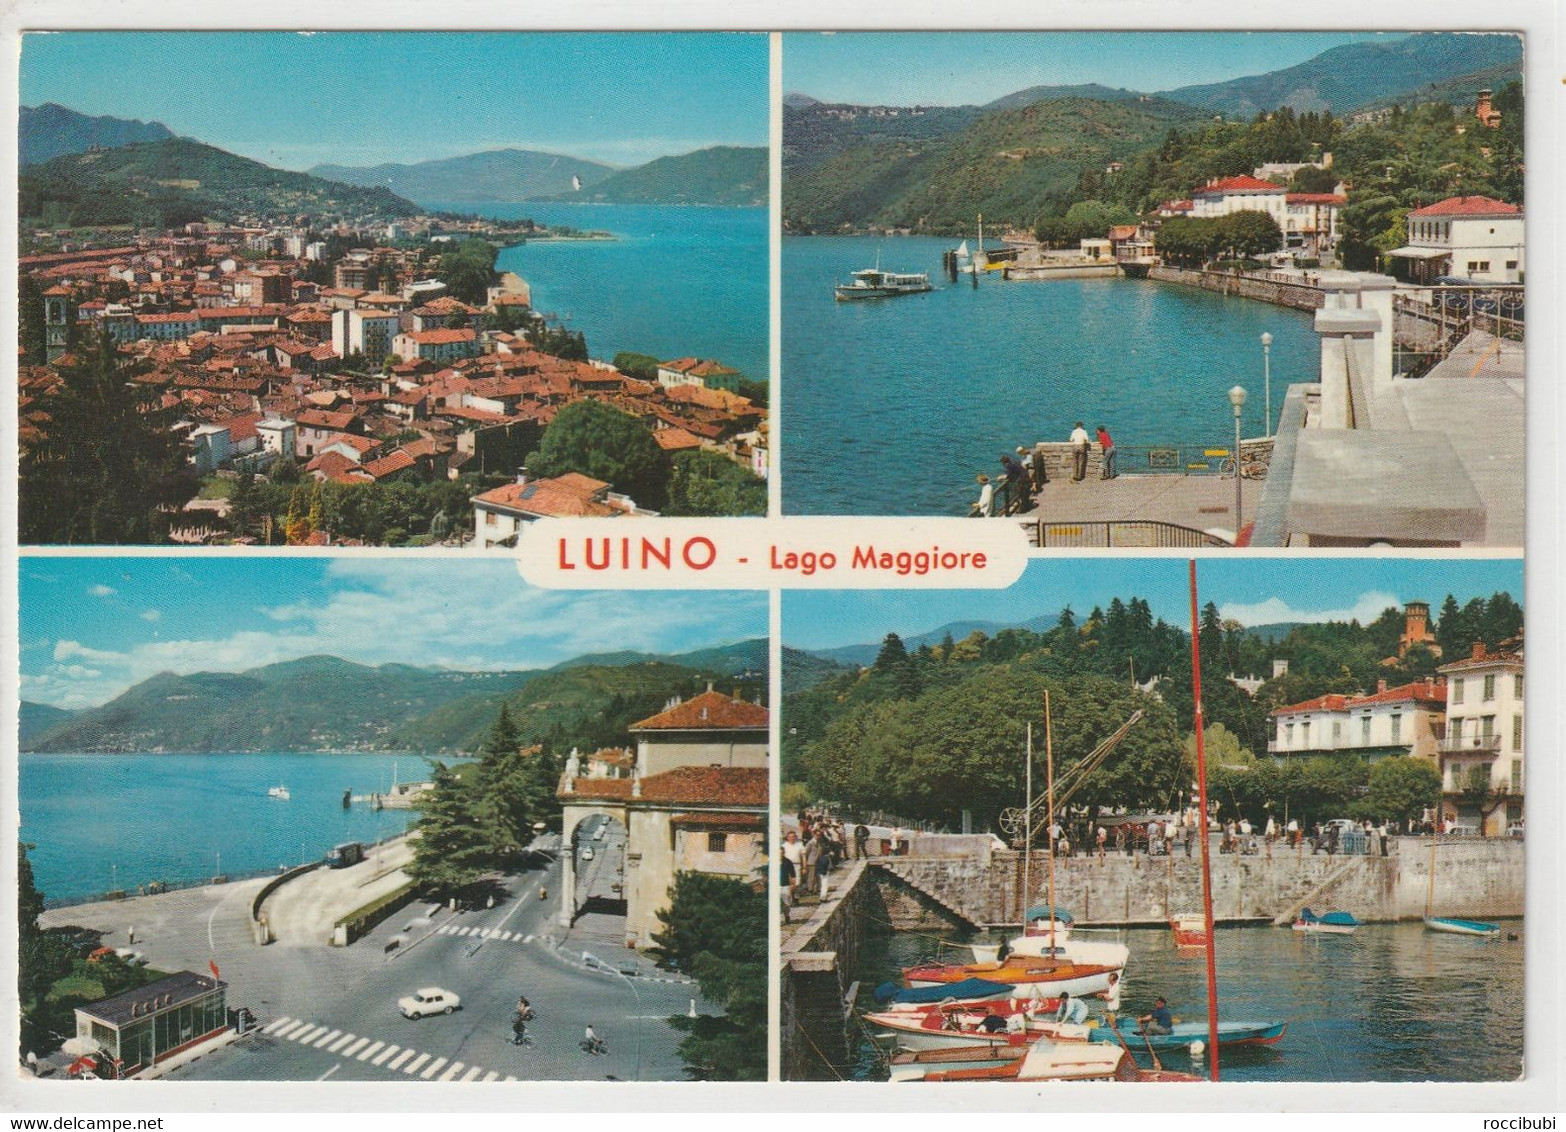 Luino, Lago Maggiore - Luino